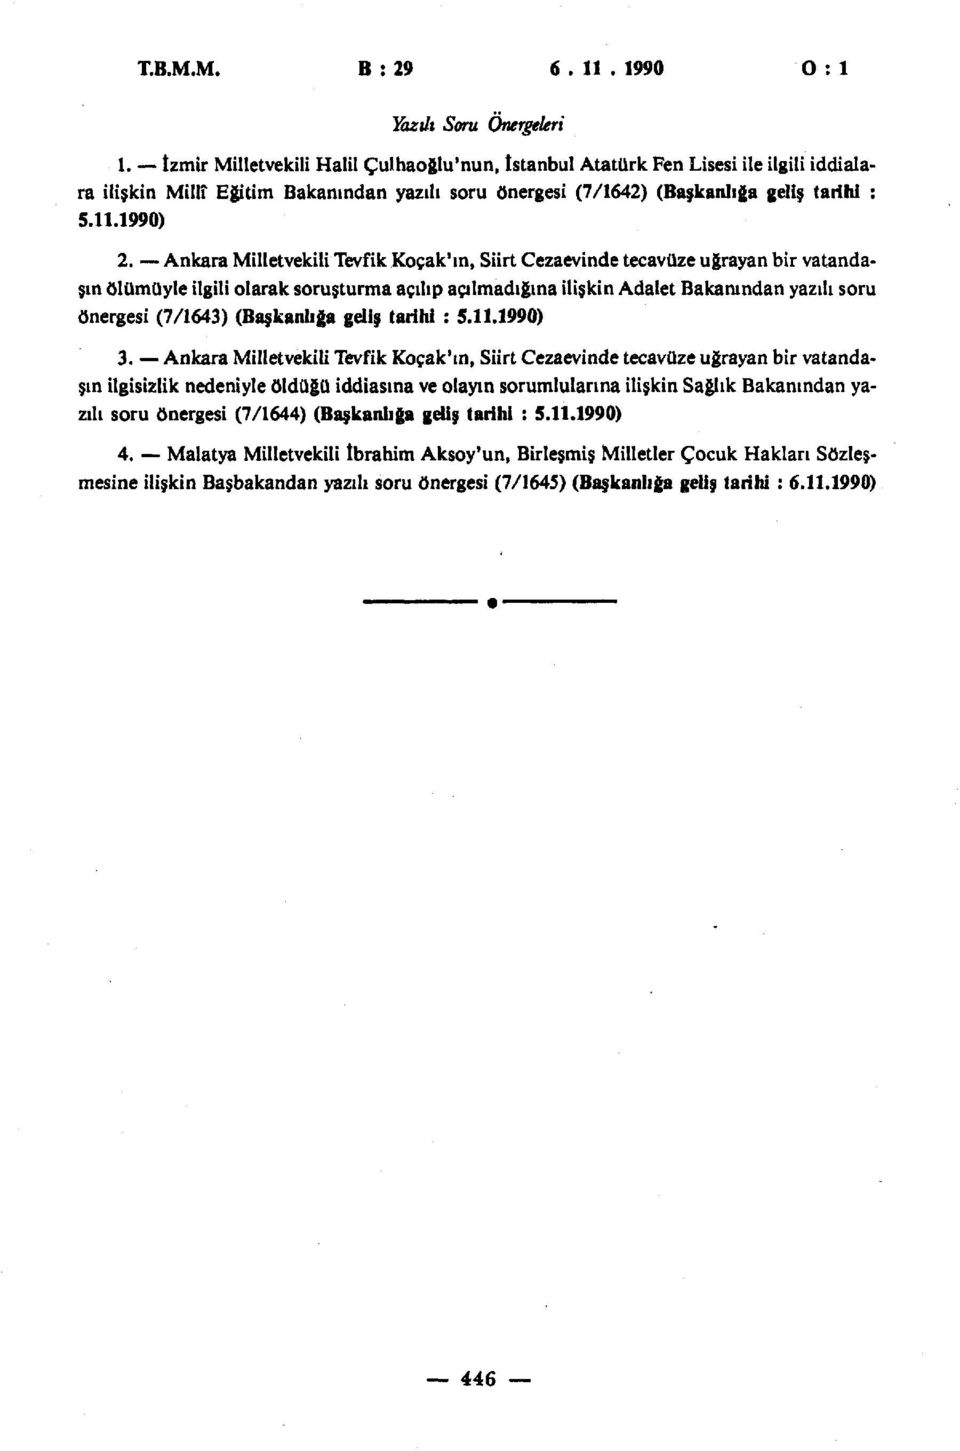 Ankara Milletvekili Tevfik Koçak'in, Siirt Cezaevinde tecavüze uğrayan bir vatandaşın ölümüyle ilgili olarak soruşturma açılıp açılmadığına ilişkin Adalet Bakanından yazılı soru önergesi (7/1643)